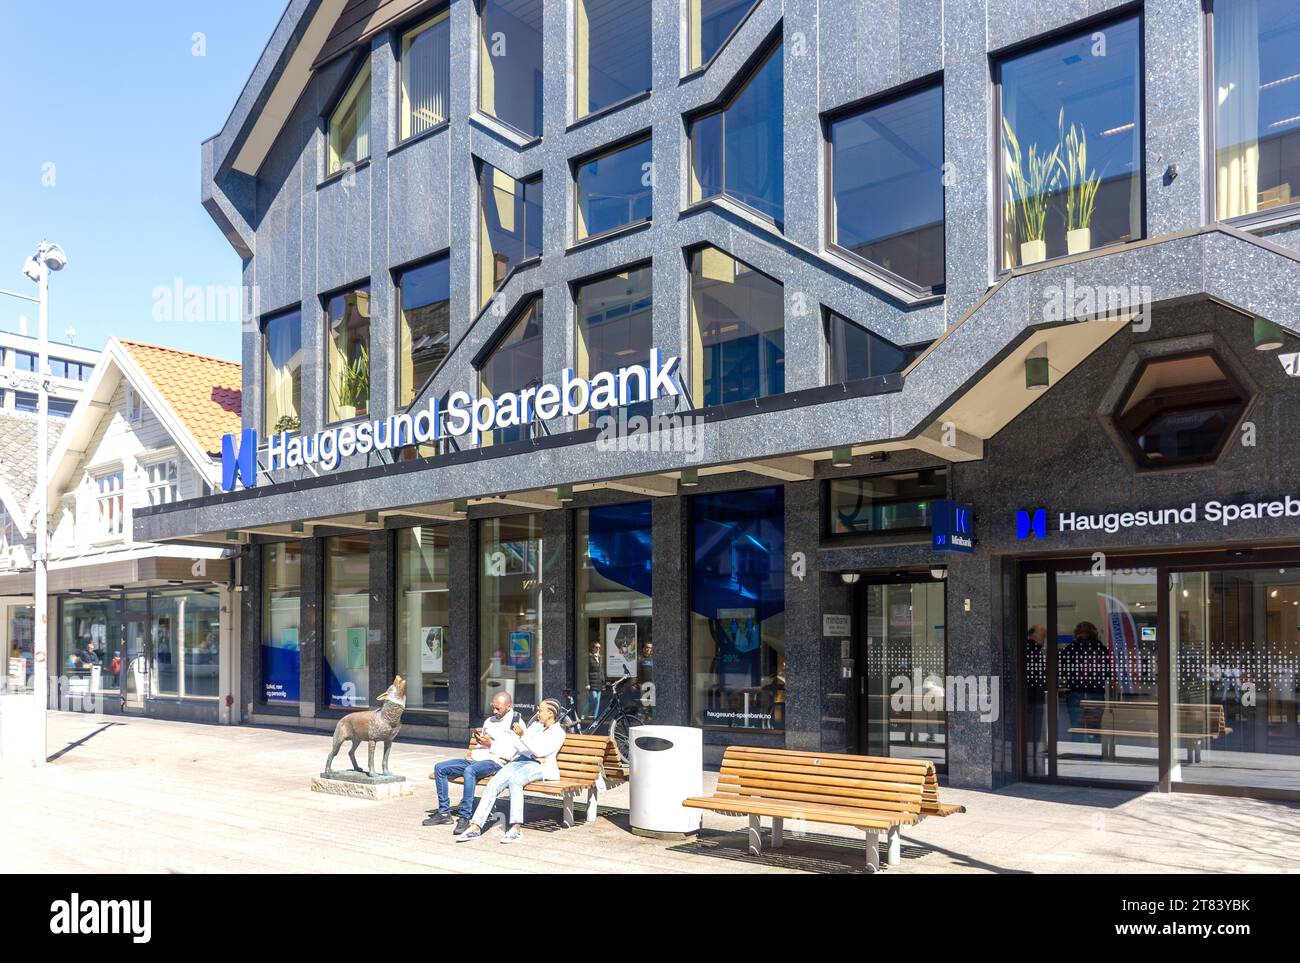 Haugesund Sparebank, Haraldsgata, Town Centre, Haugesund, Rogaland County, Norway Stock Photo